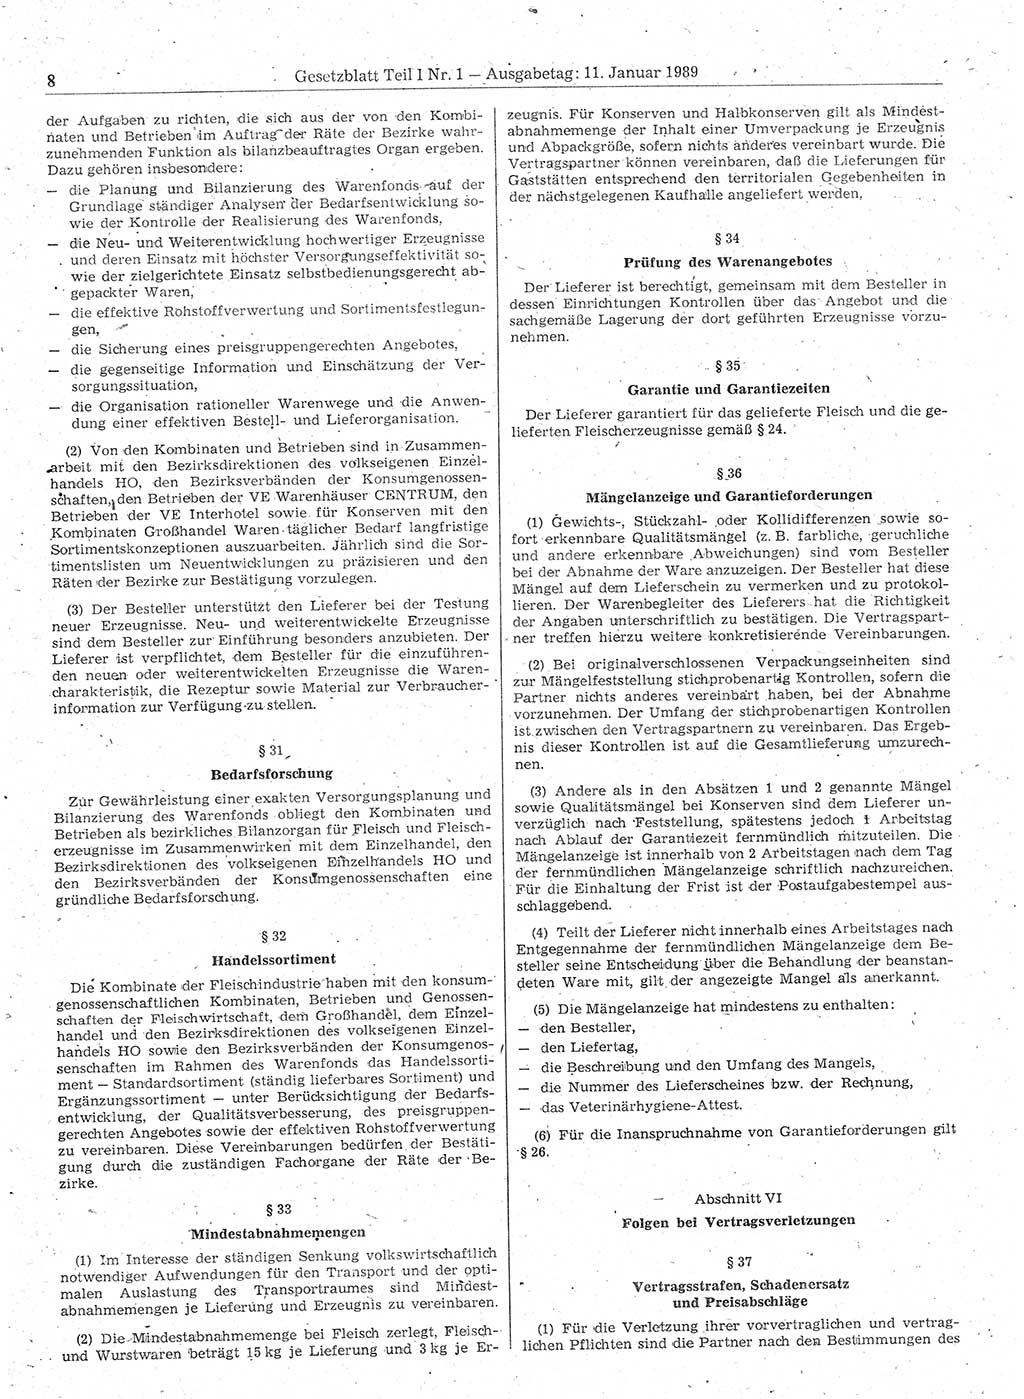 Gesetzblatt (GBl.) der Deutschen Demokratischen Republik (DDR) Teil Ⅰ 1989, Seite 8 (GBl. DDR Ⅰ 1989, S. 8)